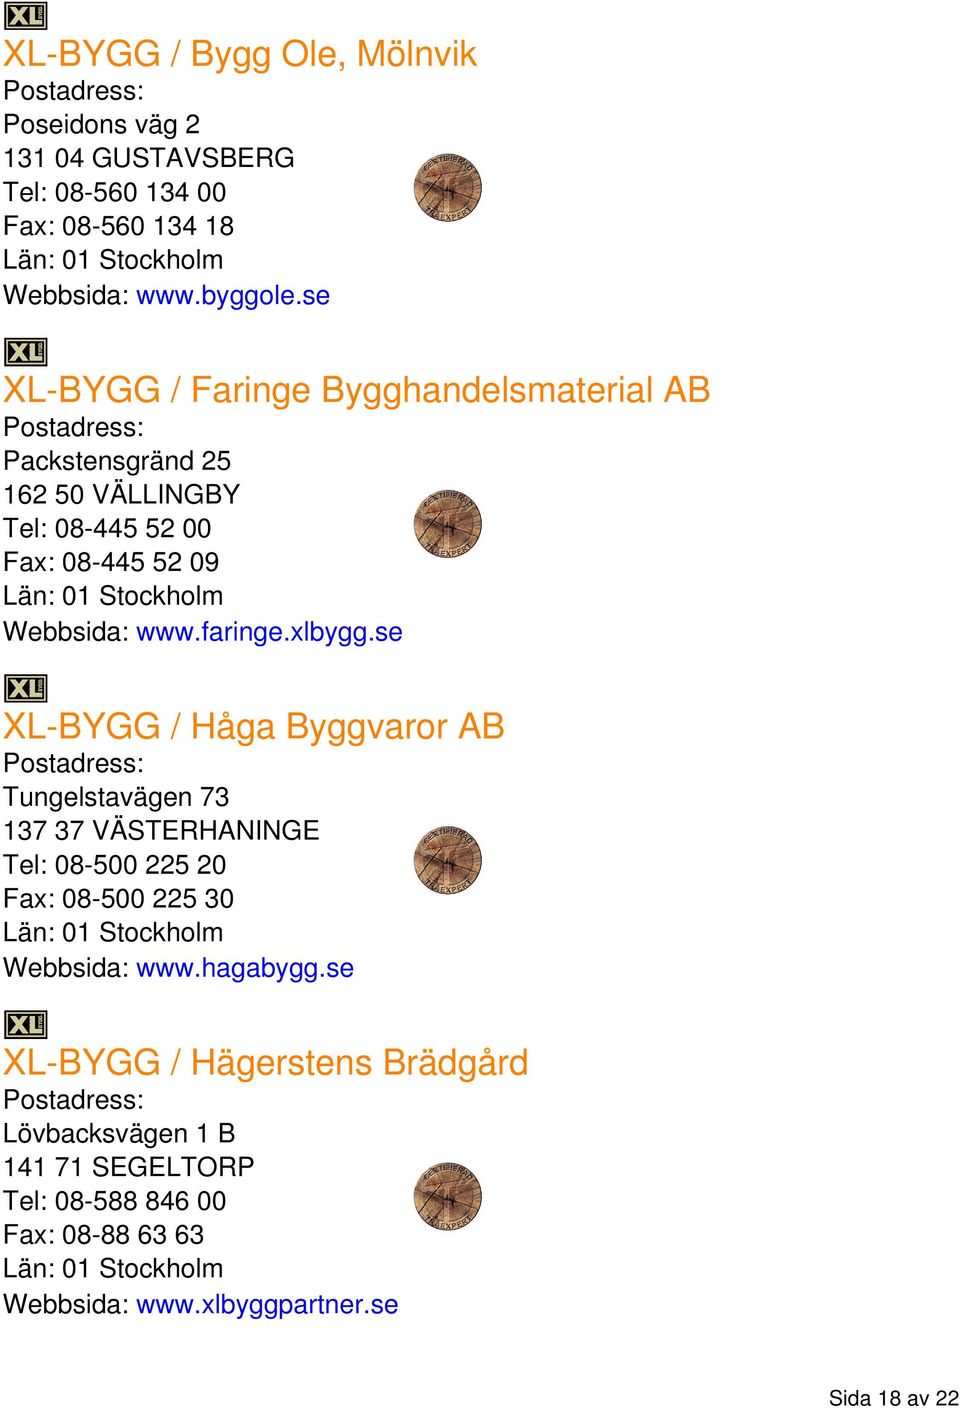 xlbygg.se XL-BYGG / Håga Byggvaror AB Tungelstavägen 73 137 37 VÄSTERHANINGE Tel: 08-500 225 20 Fax: 08-500 225 30 Webbsida: www.